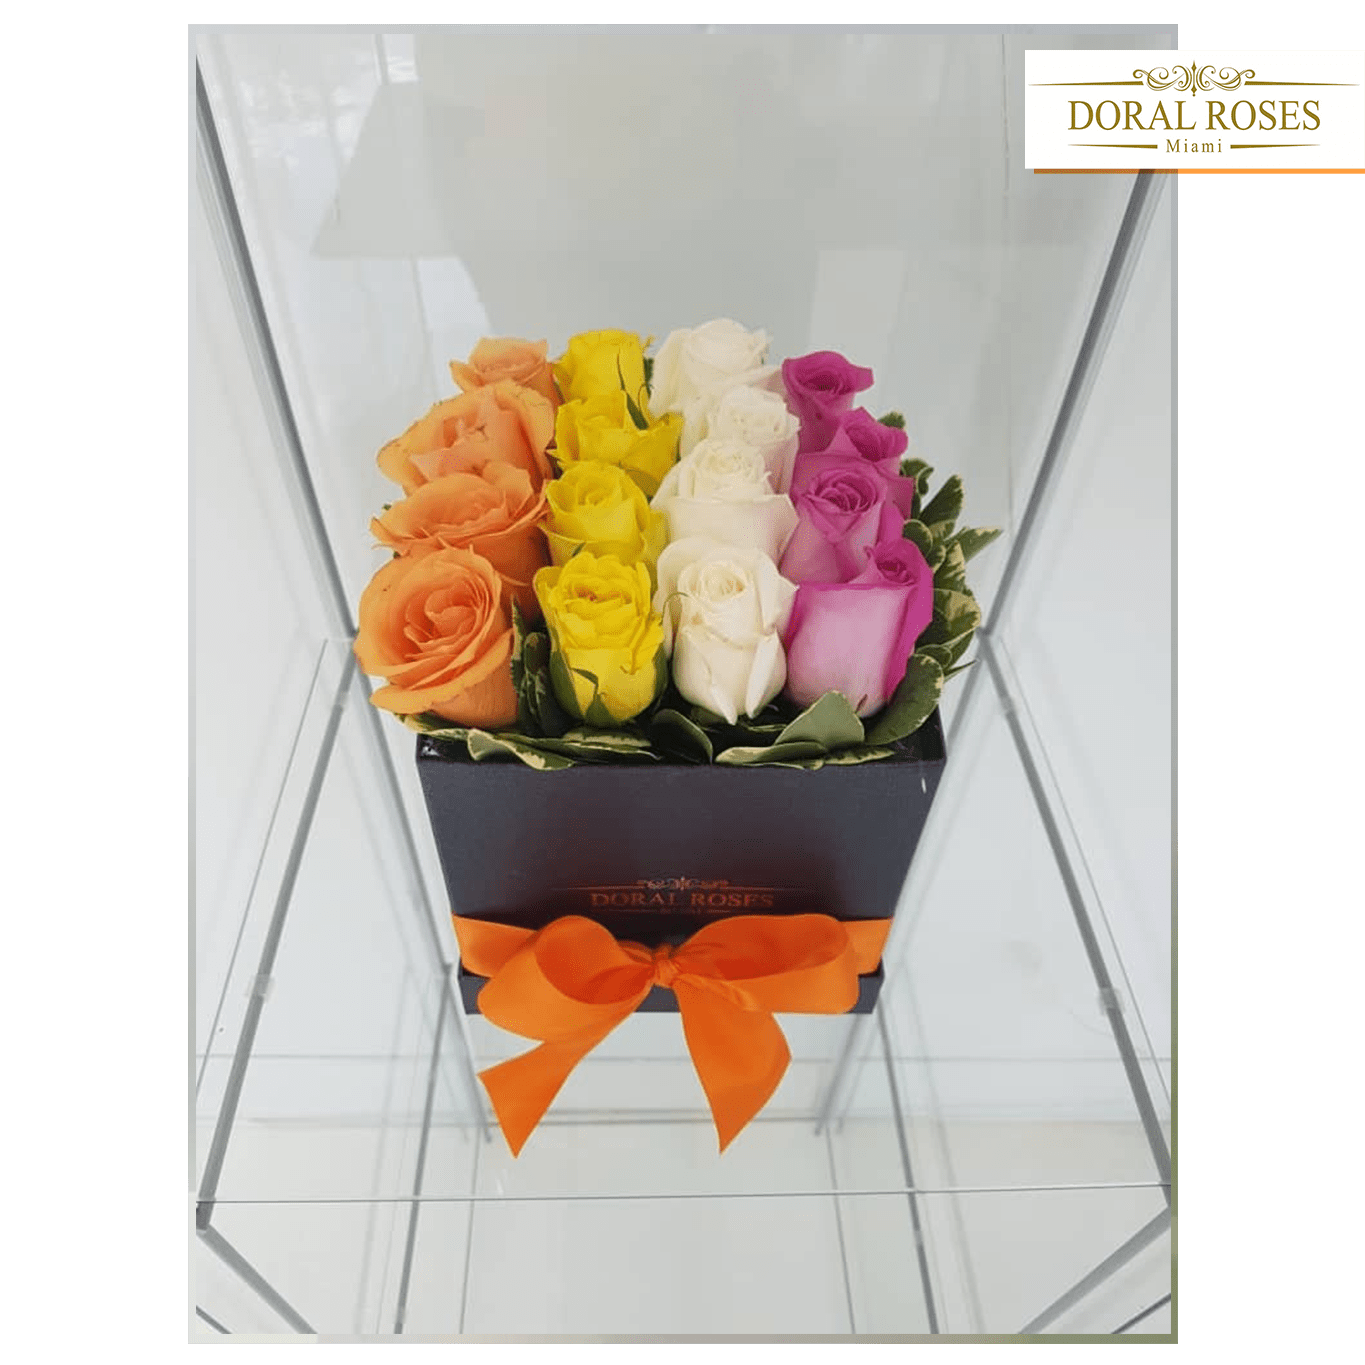 Quad Roses, Regalo de Flores para el día de la madre, Arreglo de flores, envía flores por Doral Roses Miami